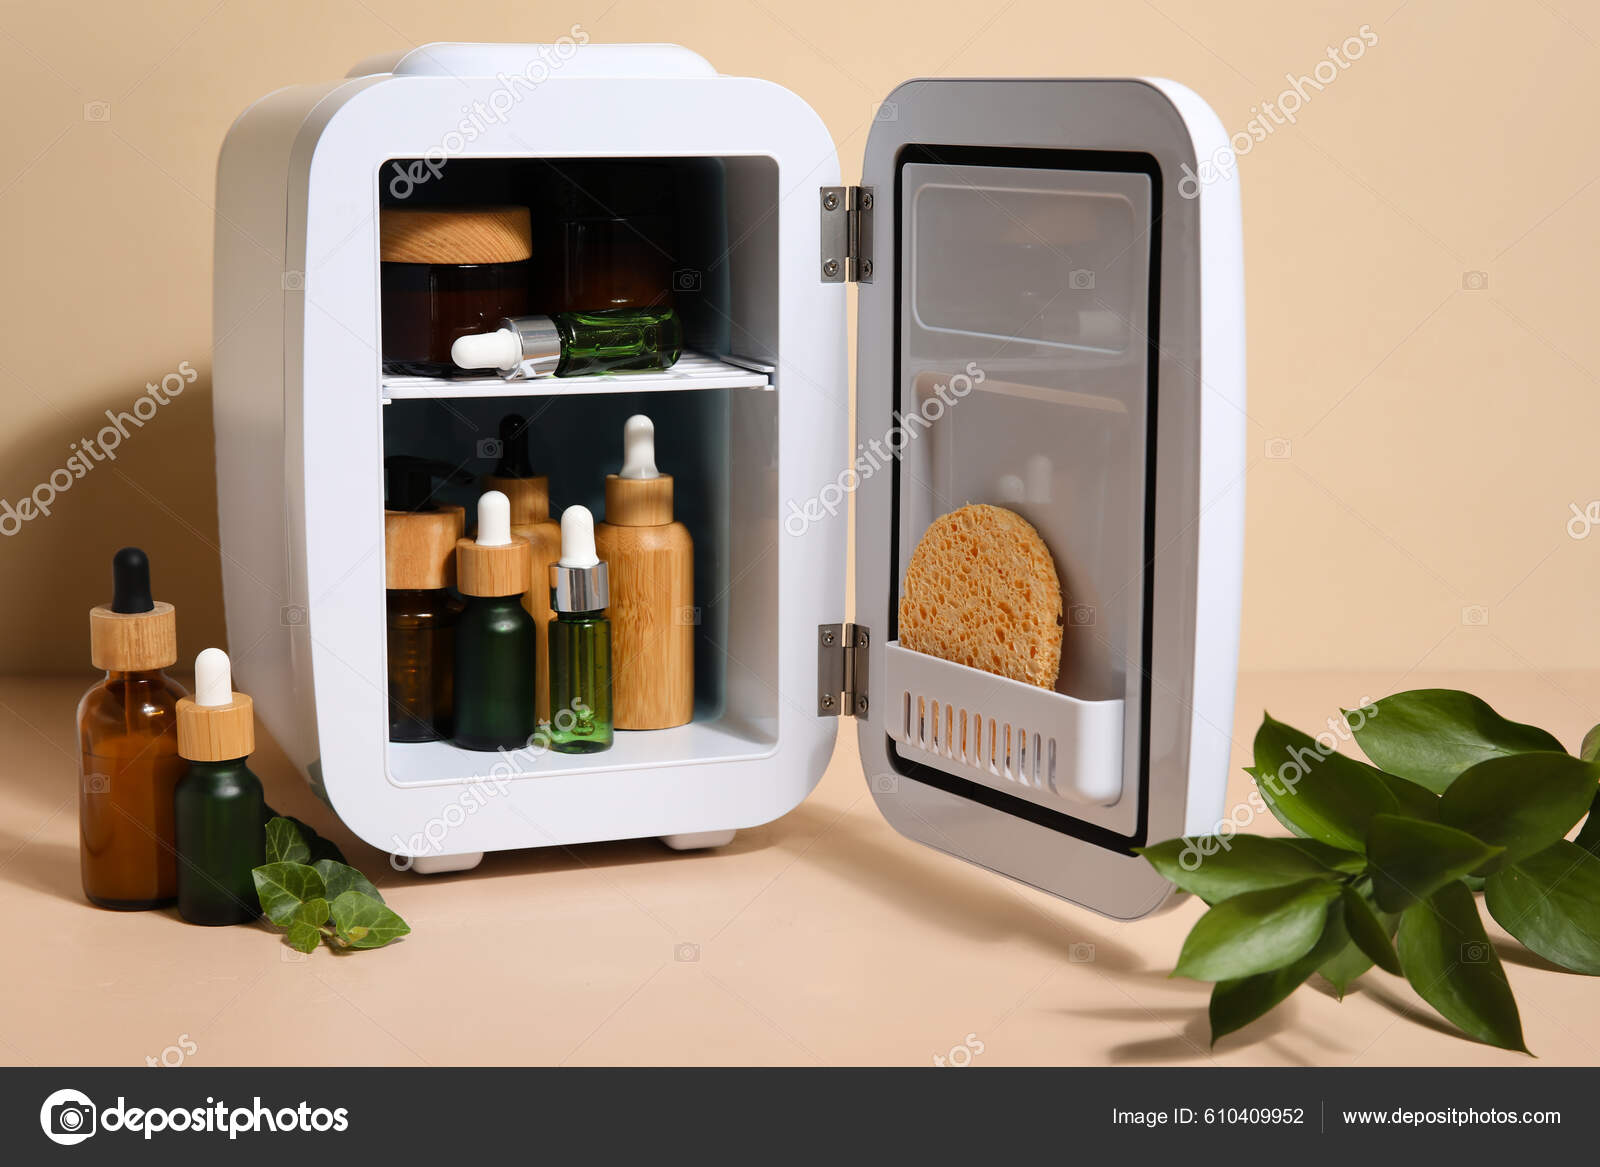 https://st.depositphotos.com/10614052/61040/i/1600/depositphotos_610409952-stock-photo-small-refrigerator-natural-cosmetics-plant.jpg